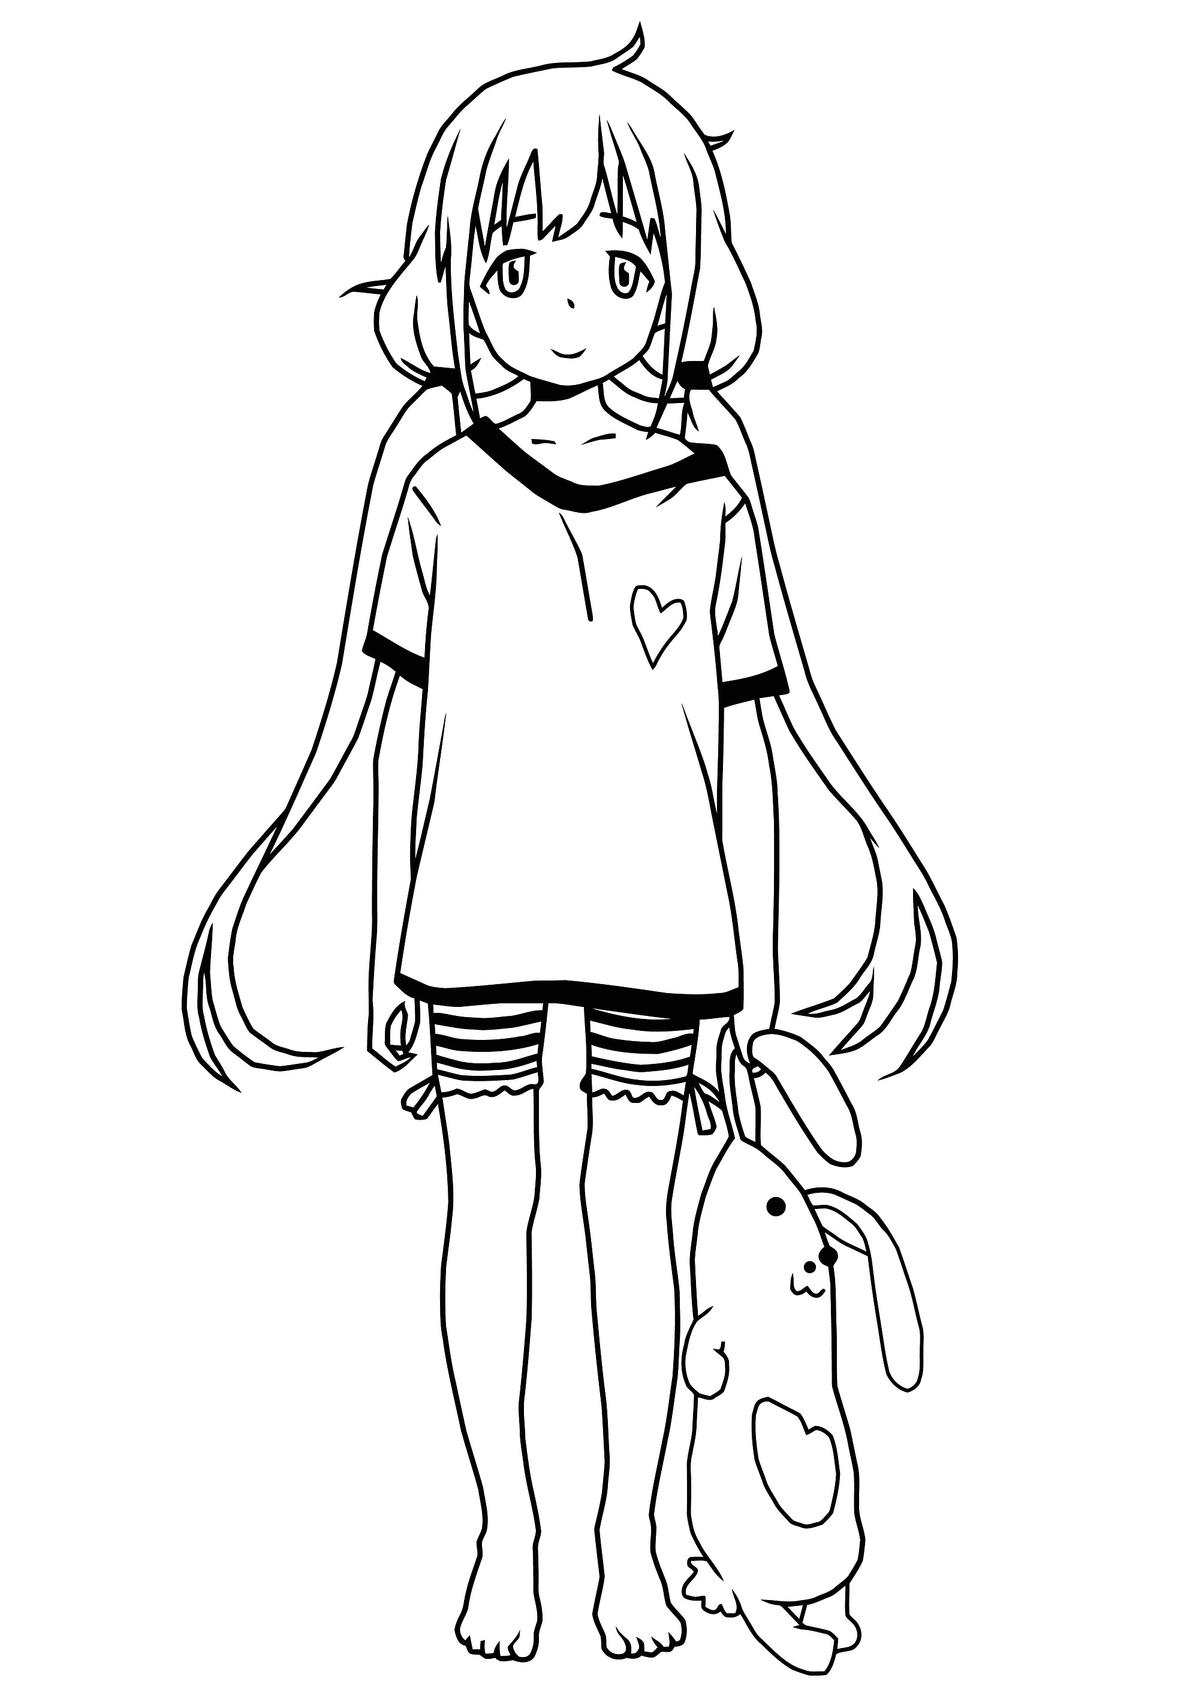 Kolorowanka anime dziewczyna z króliczkiem